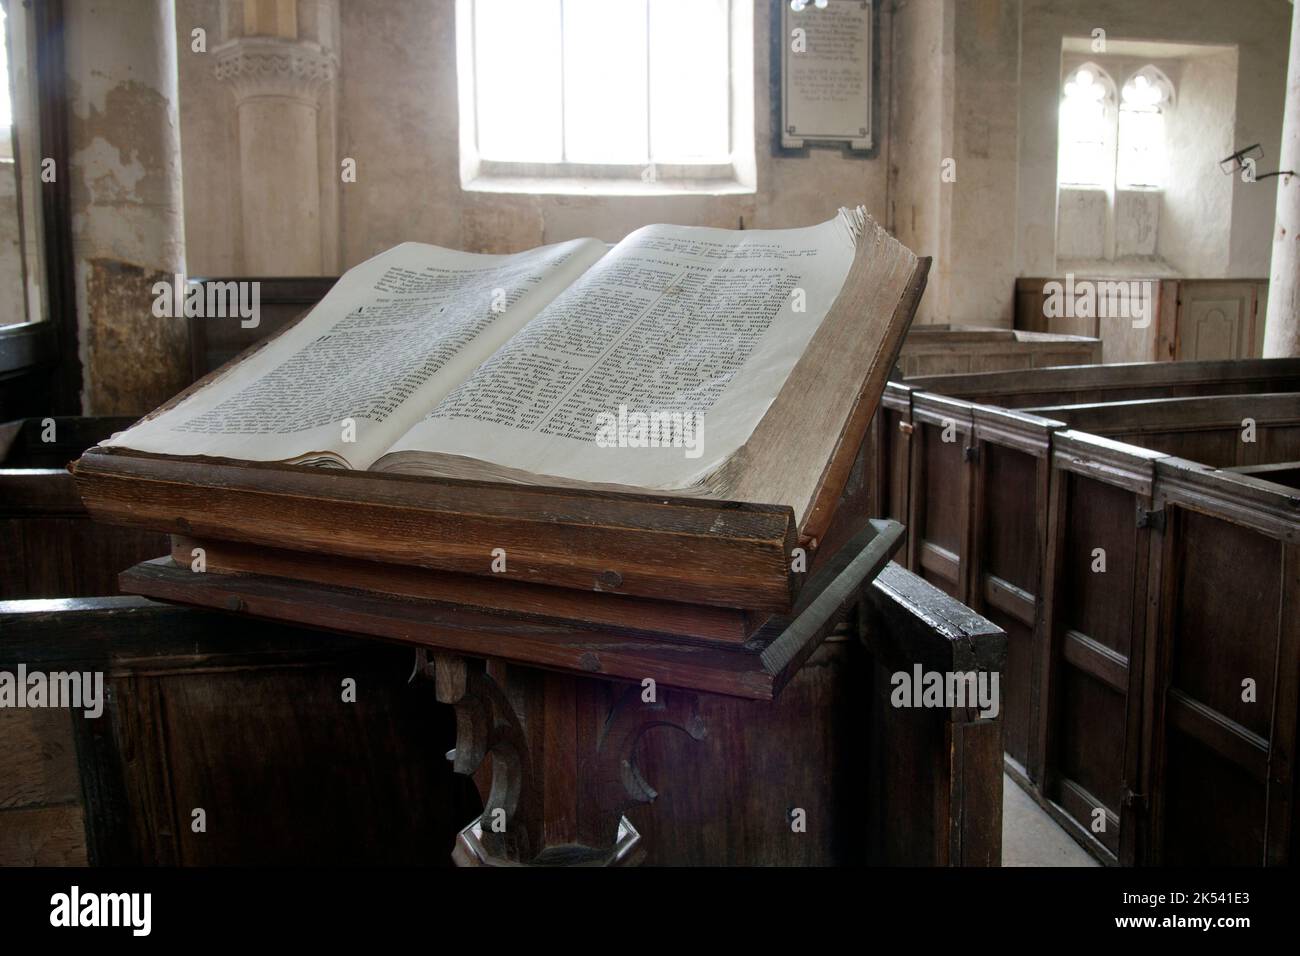 Die alte bibel in St. Johannes der Täufer mittelalterlichen Kirche Inglesham, nr. Swindon, Wiltshire, England, mit angelsächsischen Ursprüngen Stockfoto